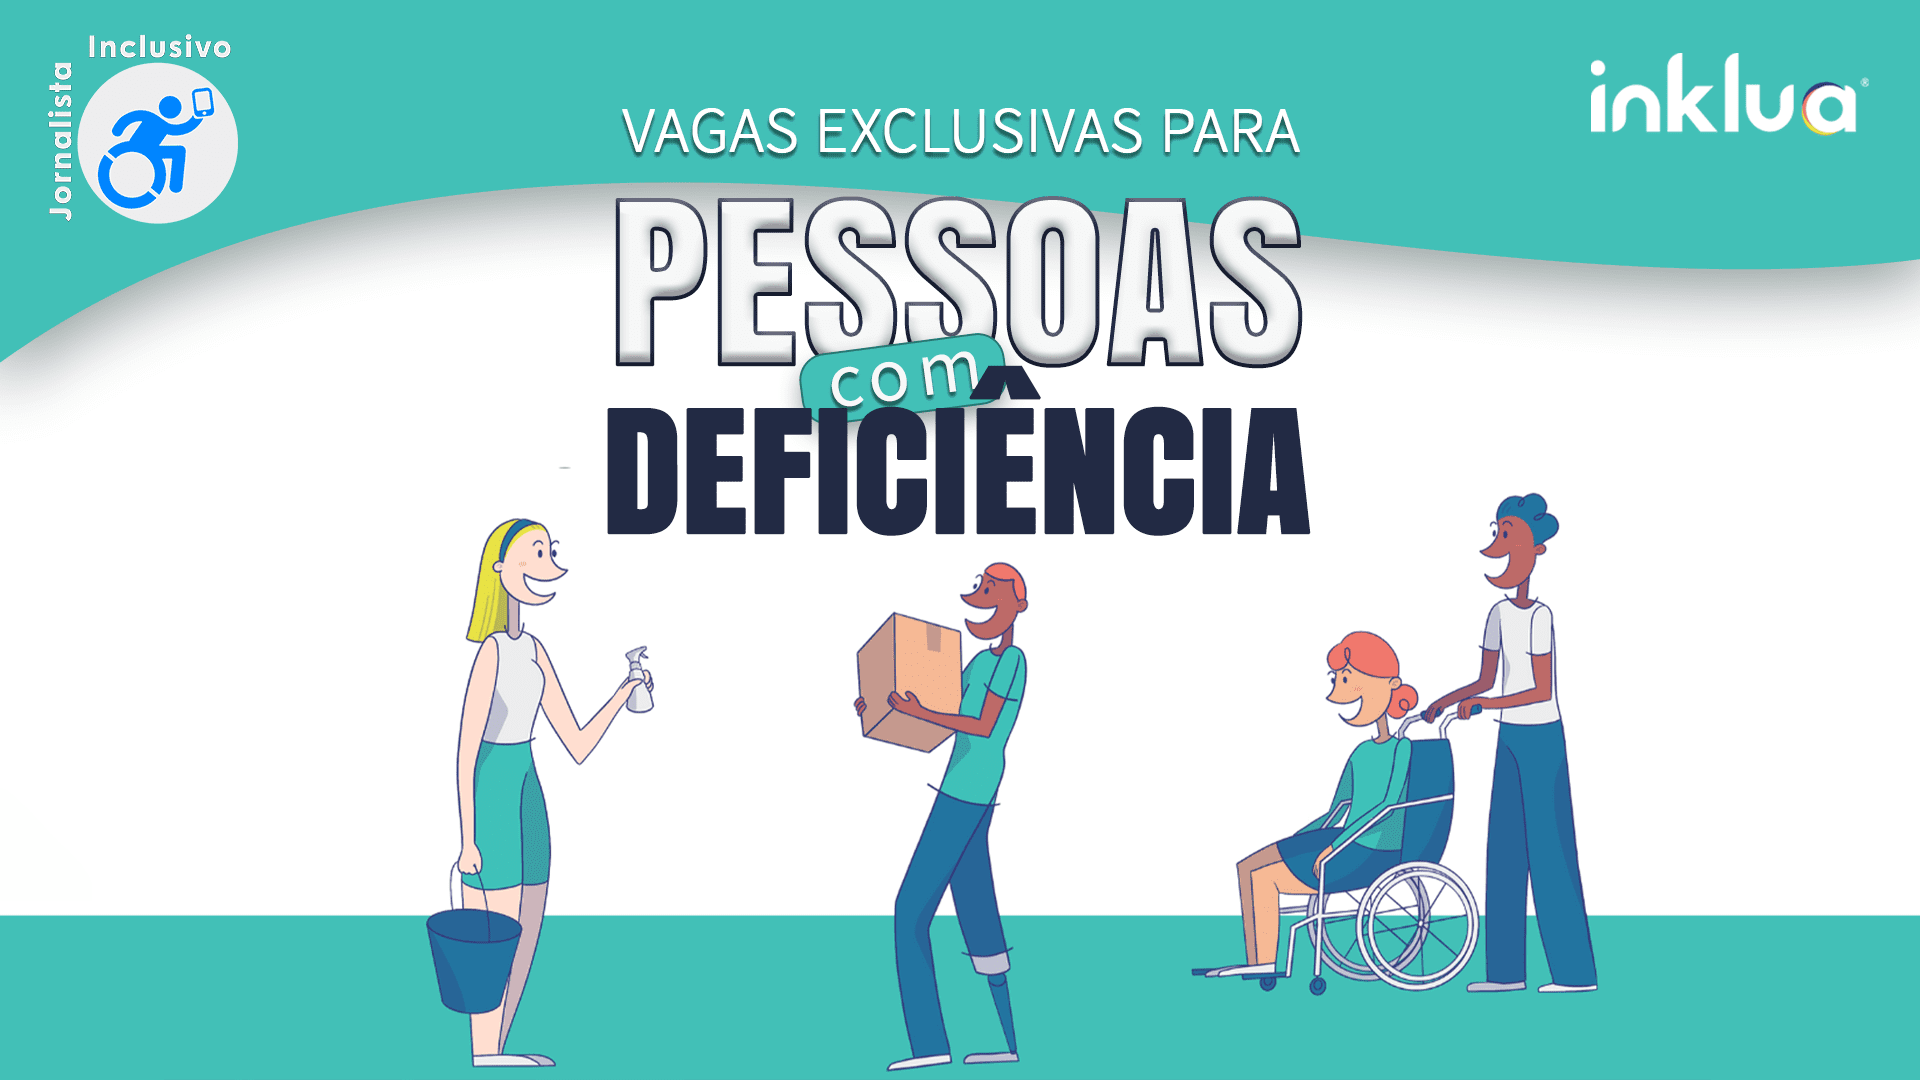 Ilustração de pessoas com deficiência, sobreposição do texto: Vagas Exclusivas para Pessoas com Deficiência. Logos Jornalista Inclusivo e Inklua.